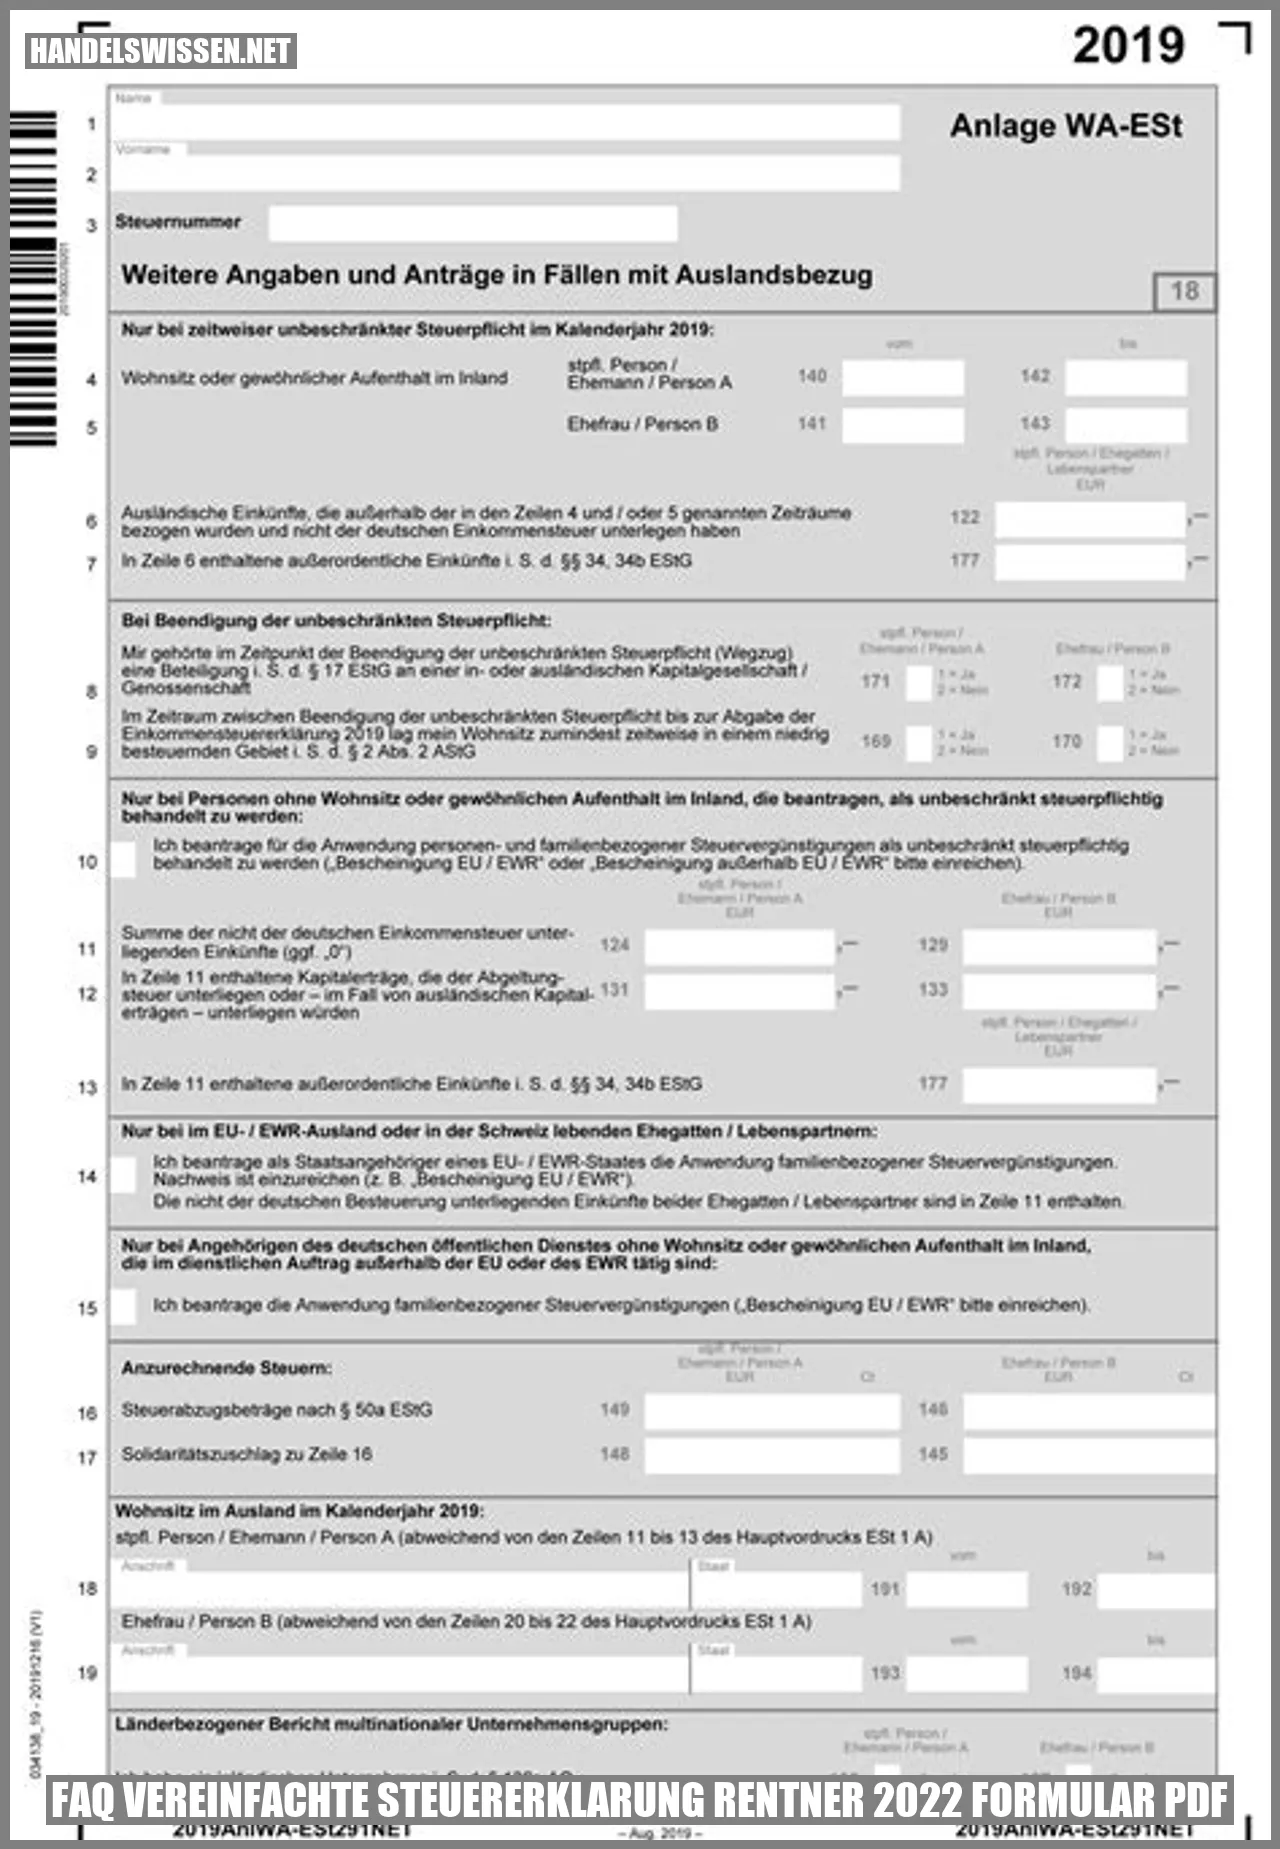 FAQ vereinfachte steuererklarung rentner 2022 formular pdf